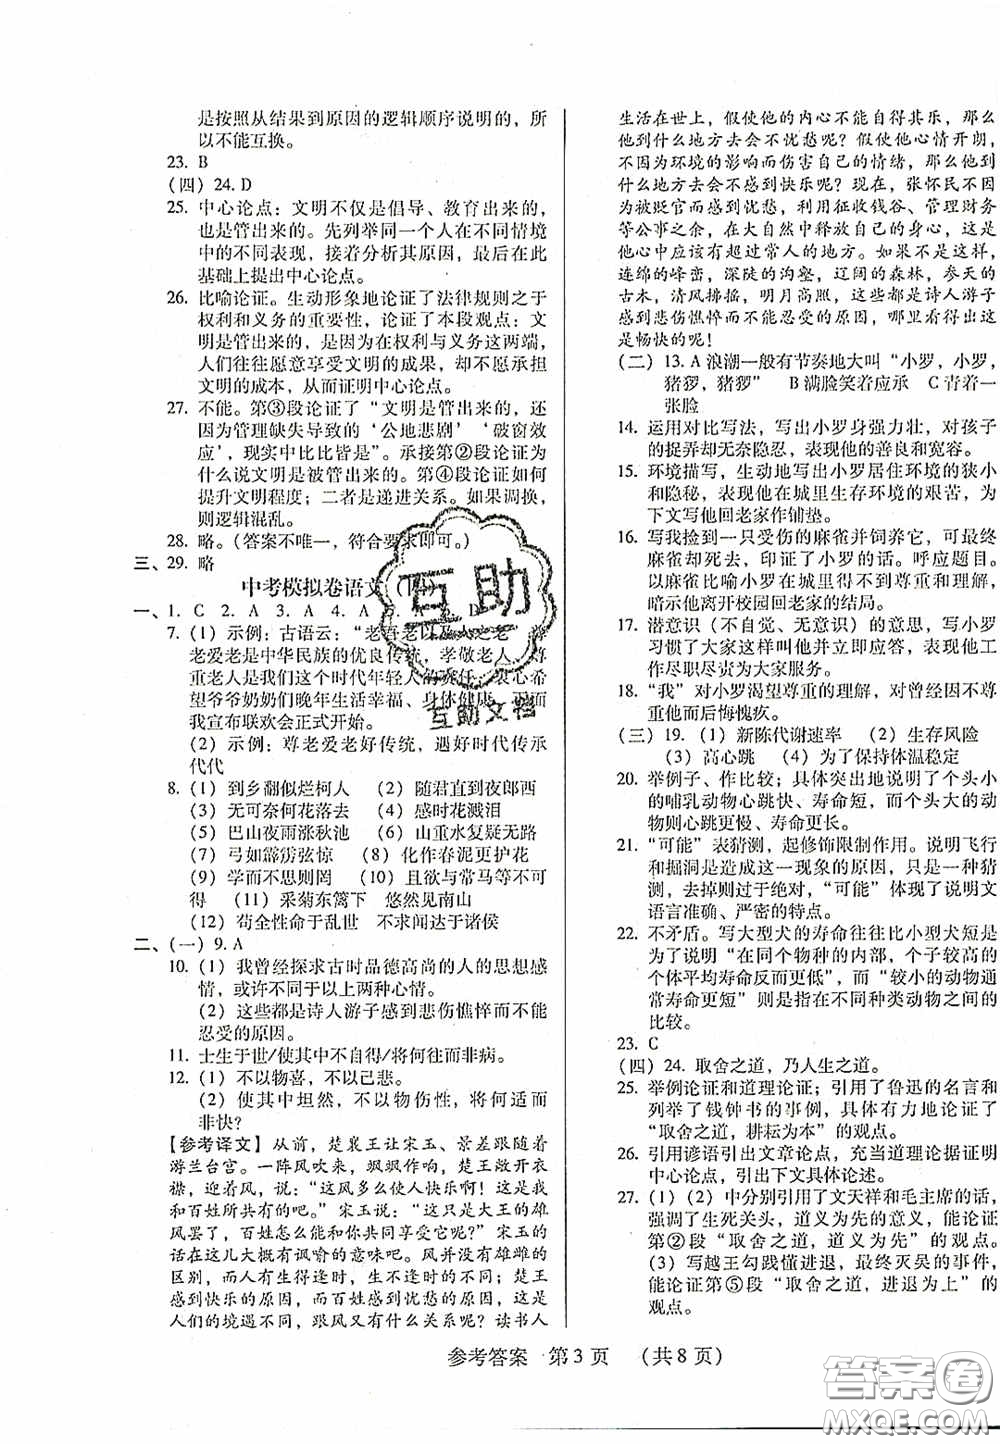 2020年最新中考模拟卷语文辽宁省专用版答案